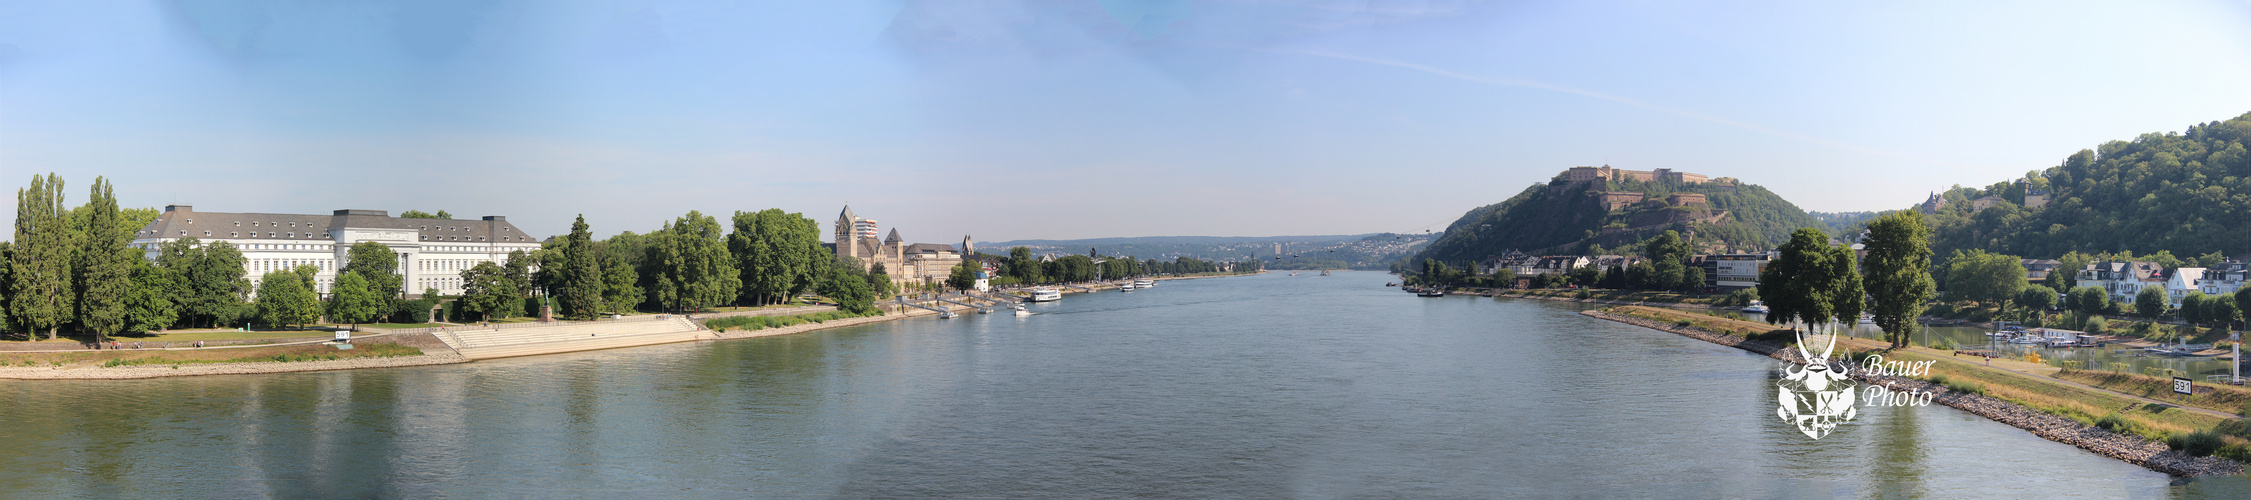 Koblenz Panorama - Ehrenbreitstein und Koblenzer Schloss